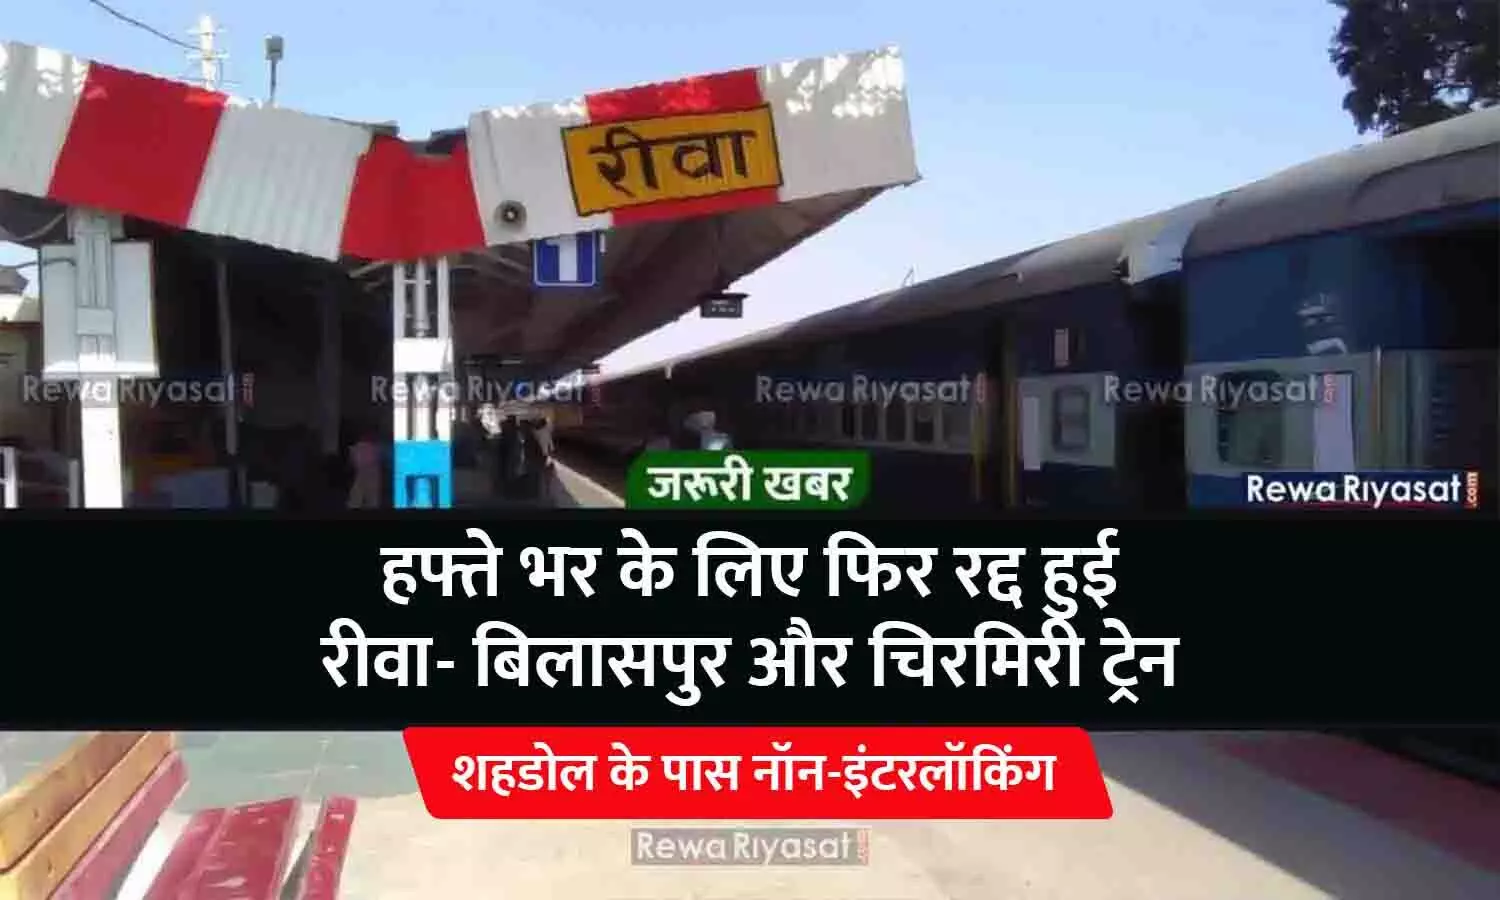 शहडोल के पास नॉन-इंटरलॉकिंग: हफ्ते भर के लिए फिर रद्द हुई रीवा- बिलासपुर और चिरमिरी ट्रेन